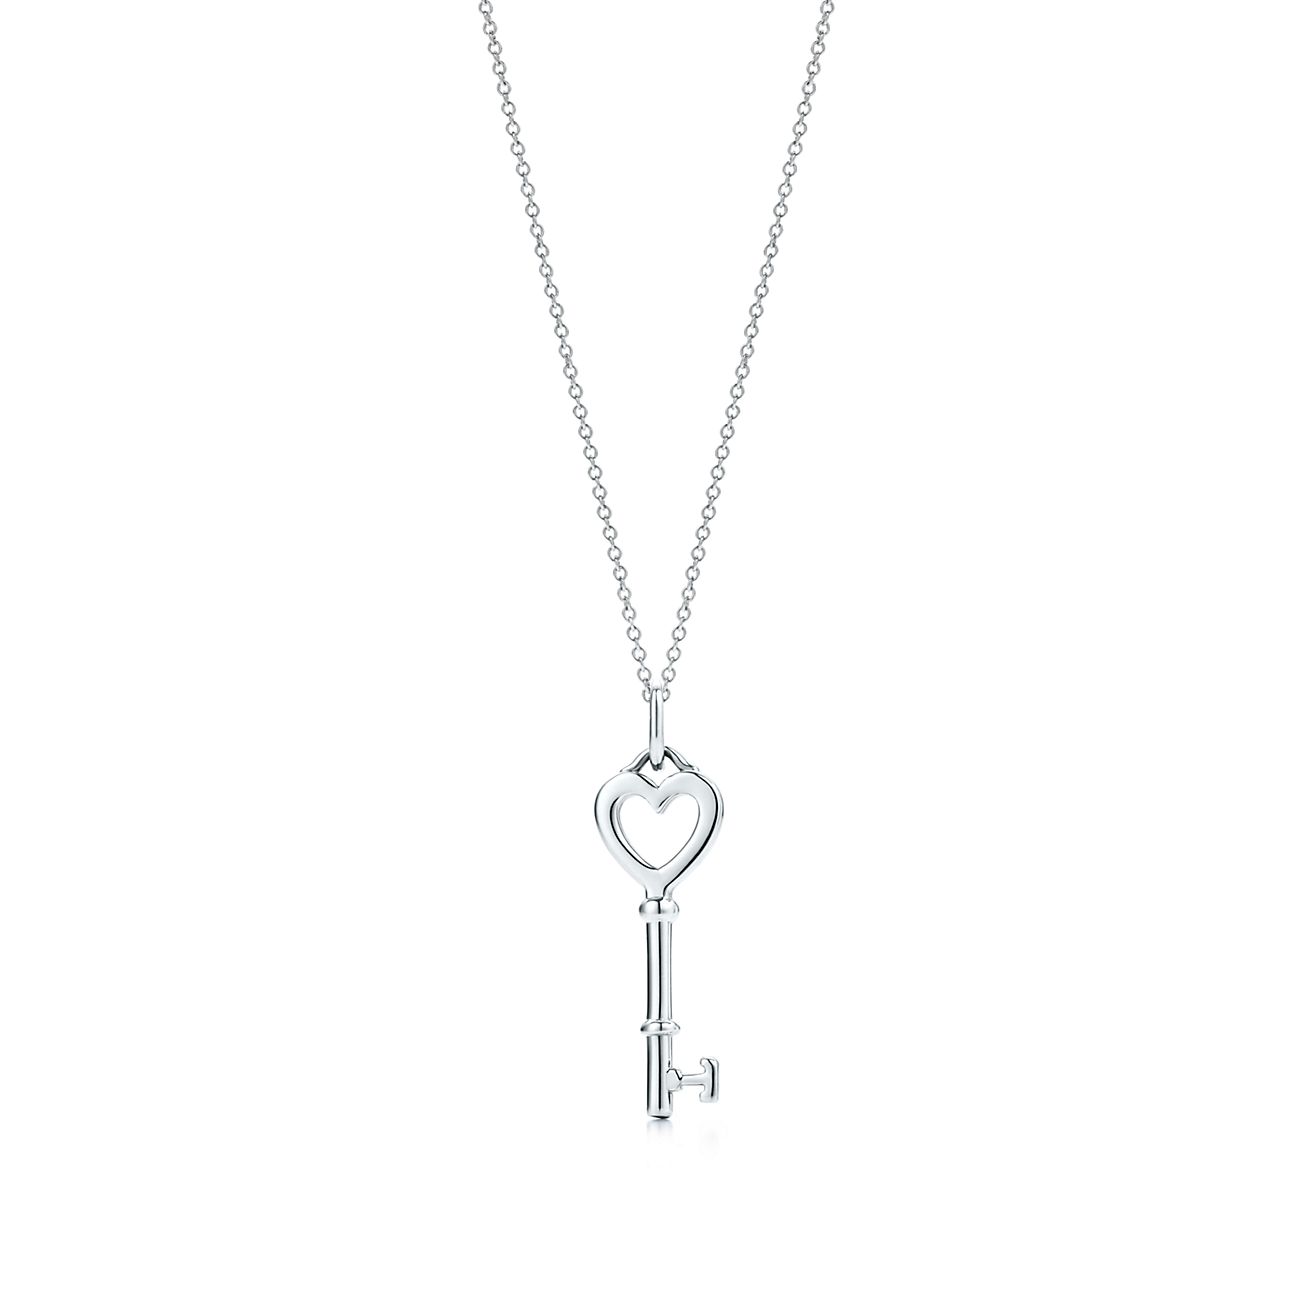 Tiffany Keys Heart key charm